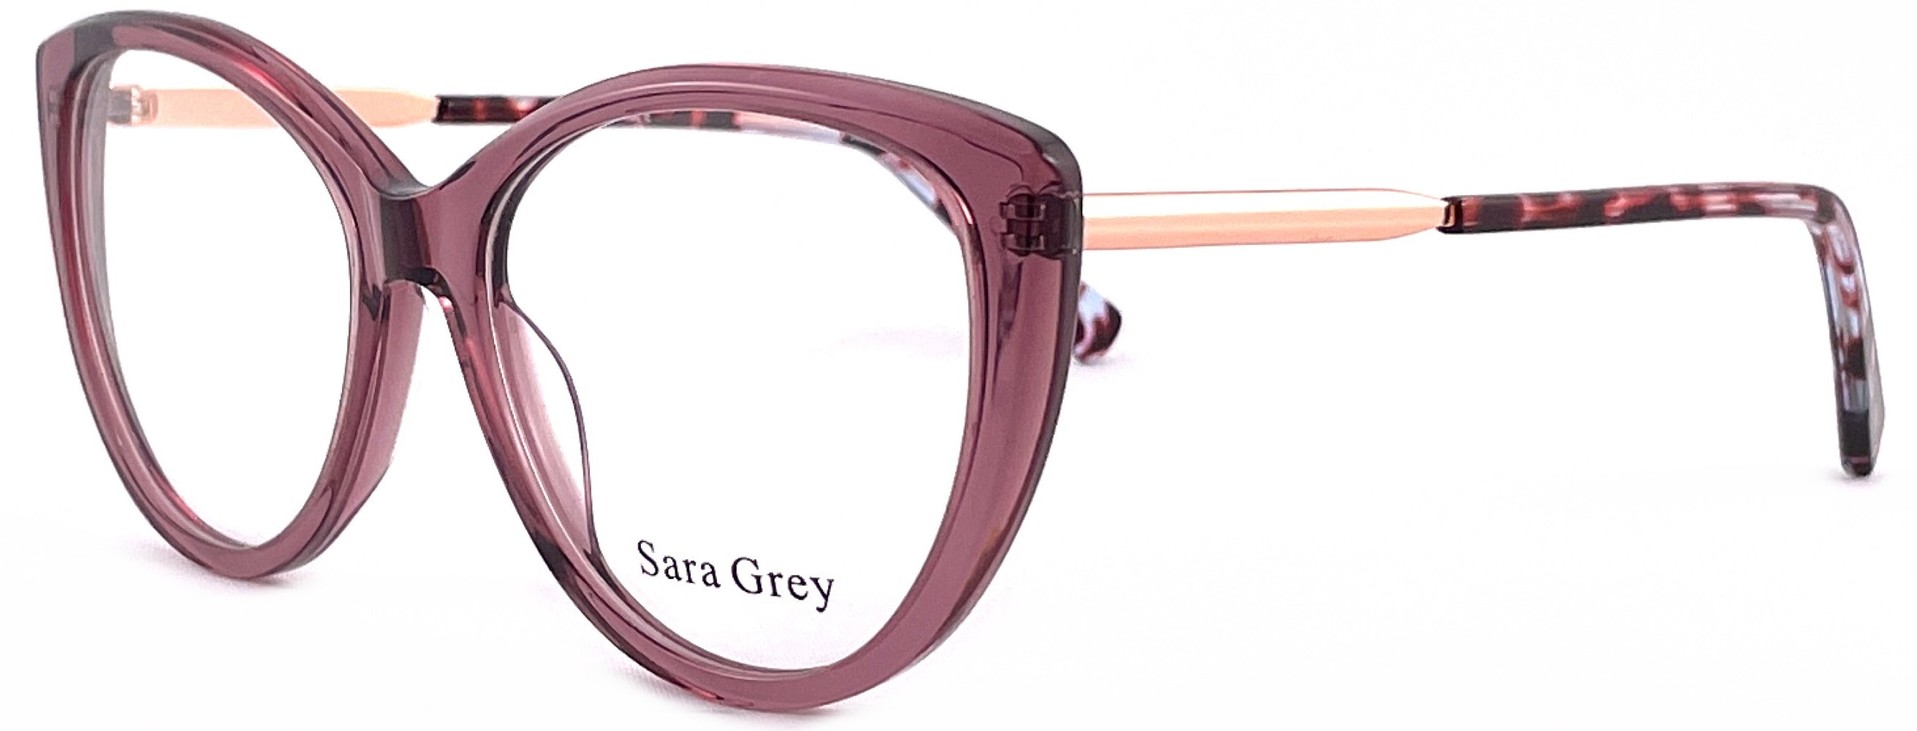 Sara Grey 1027 C04 2